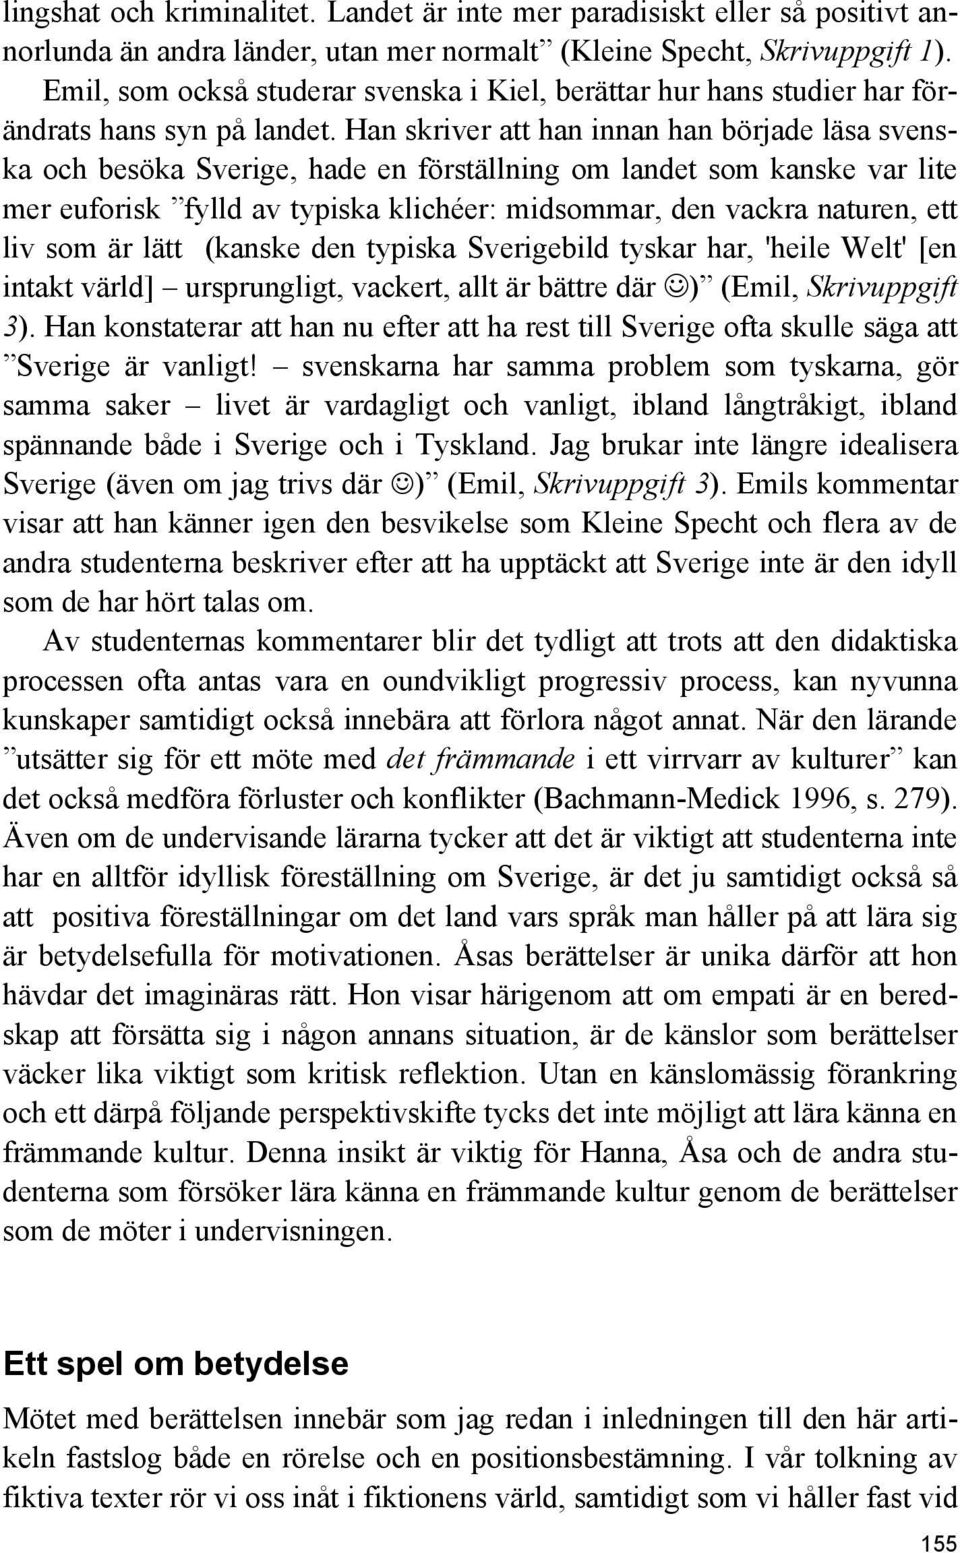 Han skriver att han innan han började läsa svenska och besöka Sverige, hade en förställning om landet som kanske var lite mer euforisk fylld av typiska klichéer: midsommar, den vackra naturen, ett